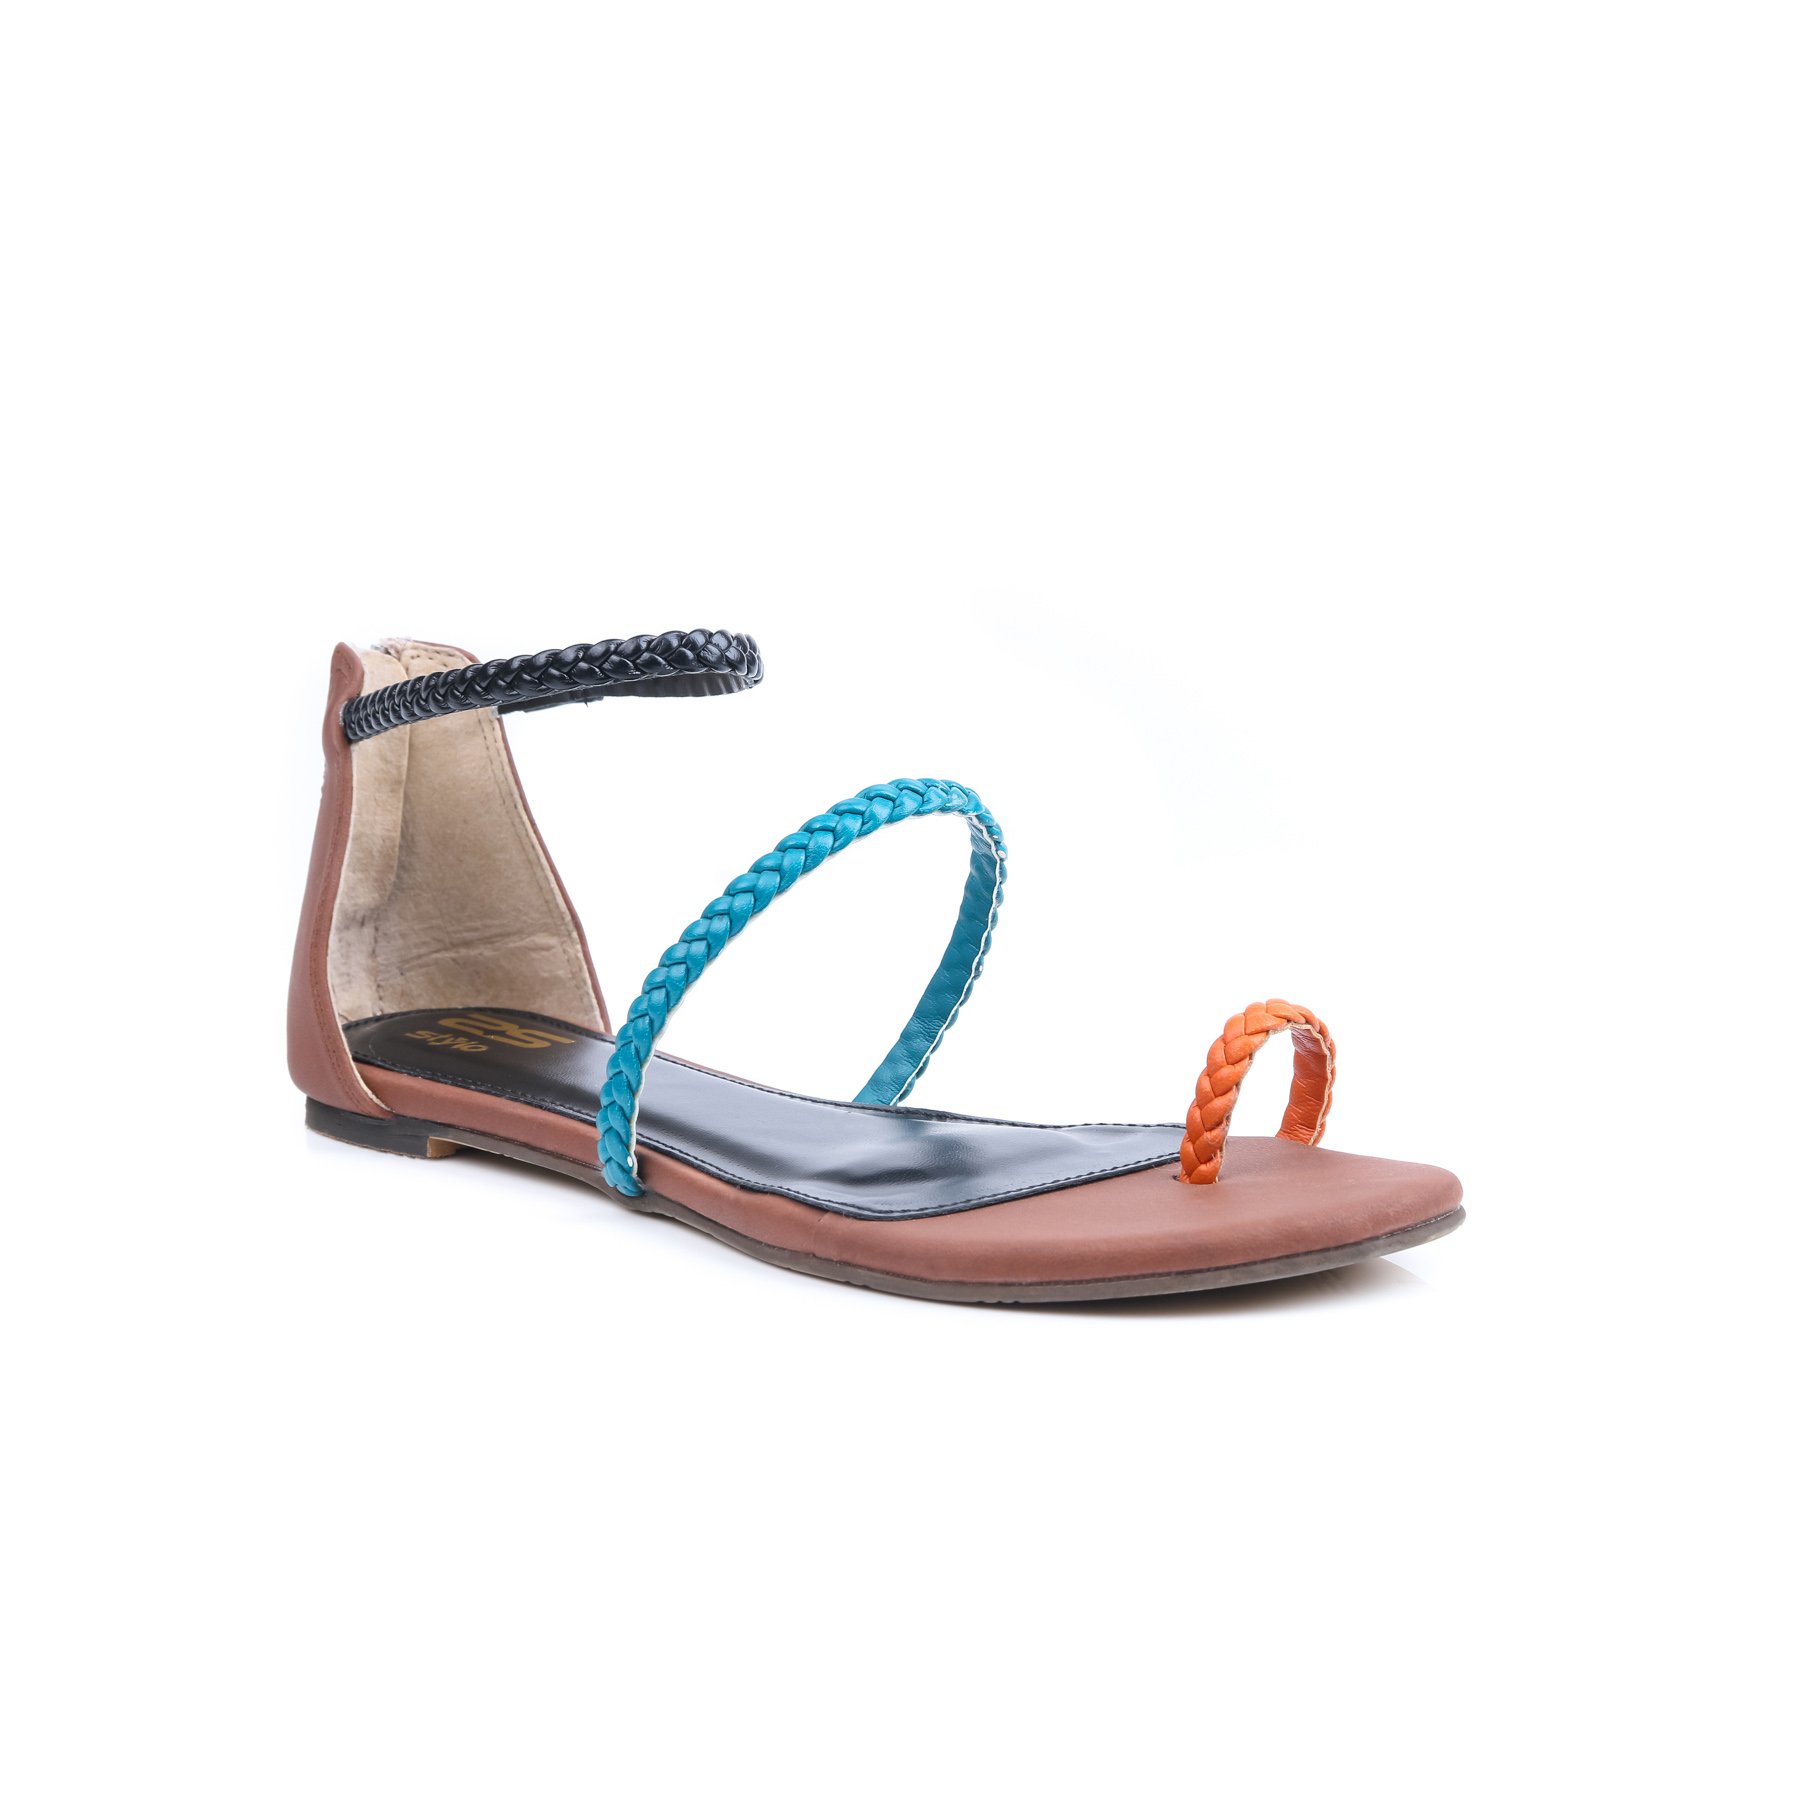 Multy Color Formal Sandals FR4456